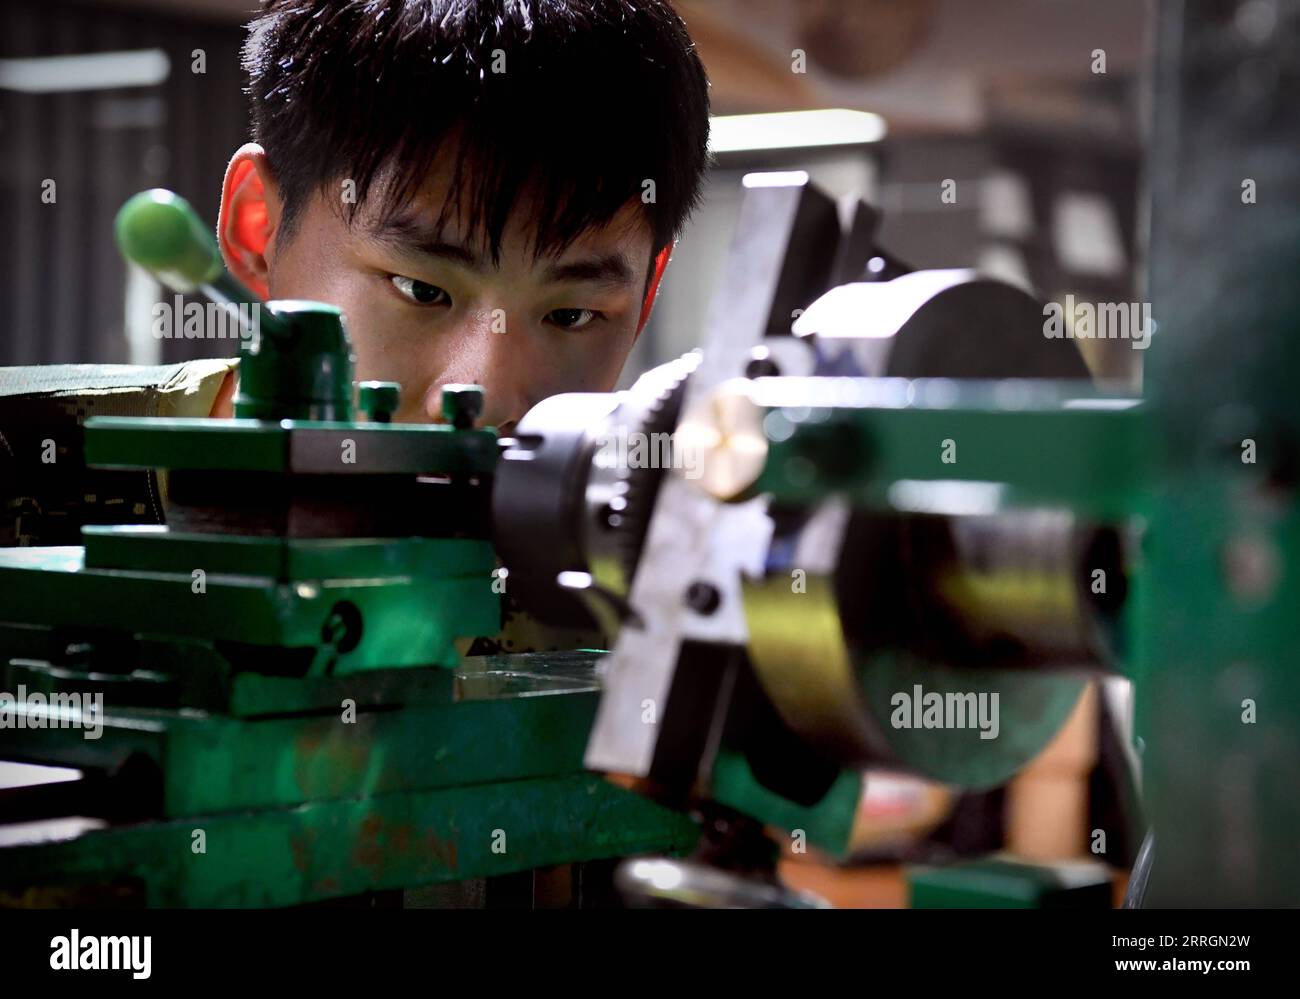 220527 -- XINMI, 27 de mayo de 2022 -- El aprendiz de Cheng Yucai Li Jinghang ajusta la máquina de guilloche en el taller de Cheng en la ciudad de Xinmi, provincia central de Henan, China, el 24 de mayo de 2022. El guilloche es una técnica decorativa en la que un patrón preciso, intrincado y repetitivo se graba mecánicamente en un material a través del giro del motor. La técnica utiliza una máquina controlada por la delicadeza de la mano del artesano. Como un proceso importante en la fabricación de relojes y joyas superiores, el arte ahora es dominado por pocas personas. Cheng Yucai, nacido en 1978, conoció a Guilloche en 2013 cuando vio un cigarro Foto de stock